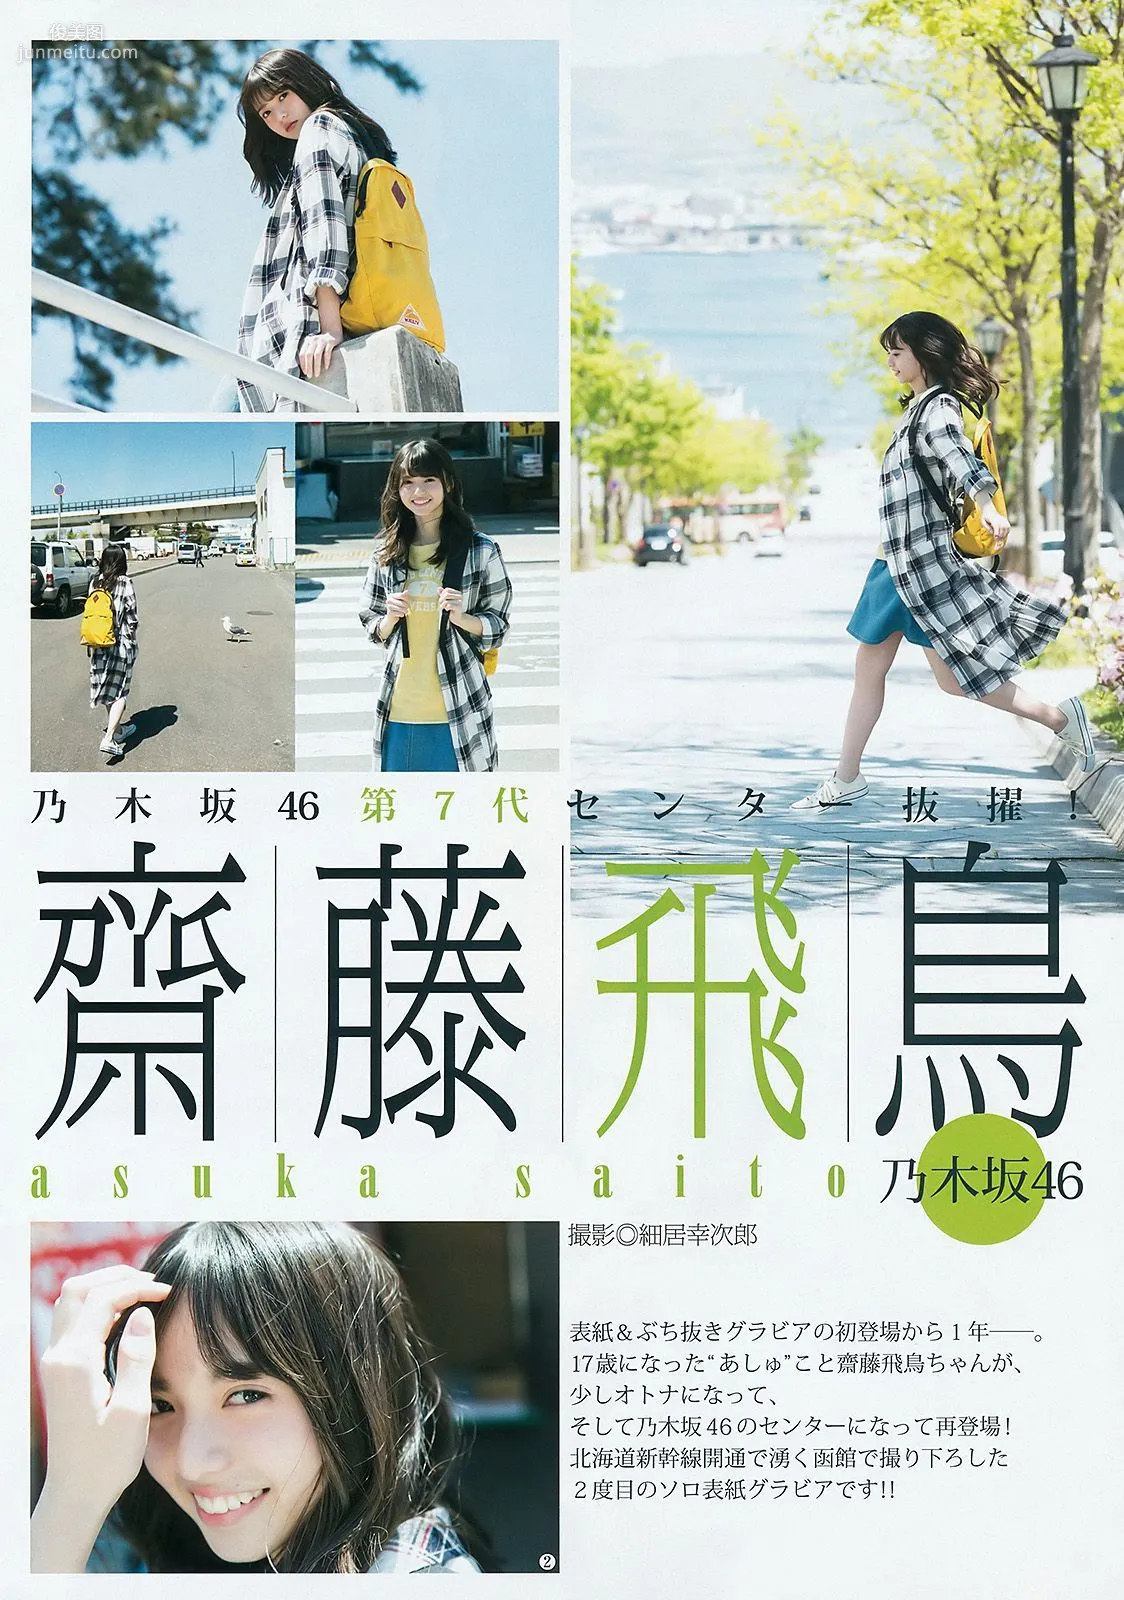 齋藤飛鳥 長澤茉里奈 福原遥 [Weekly Young Jump] 2016年No.31 写真杂志3